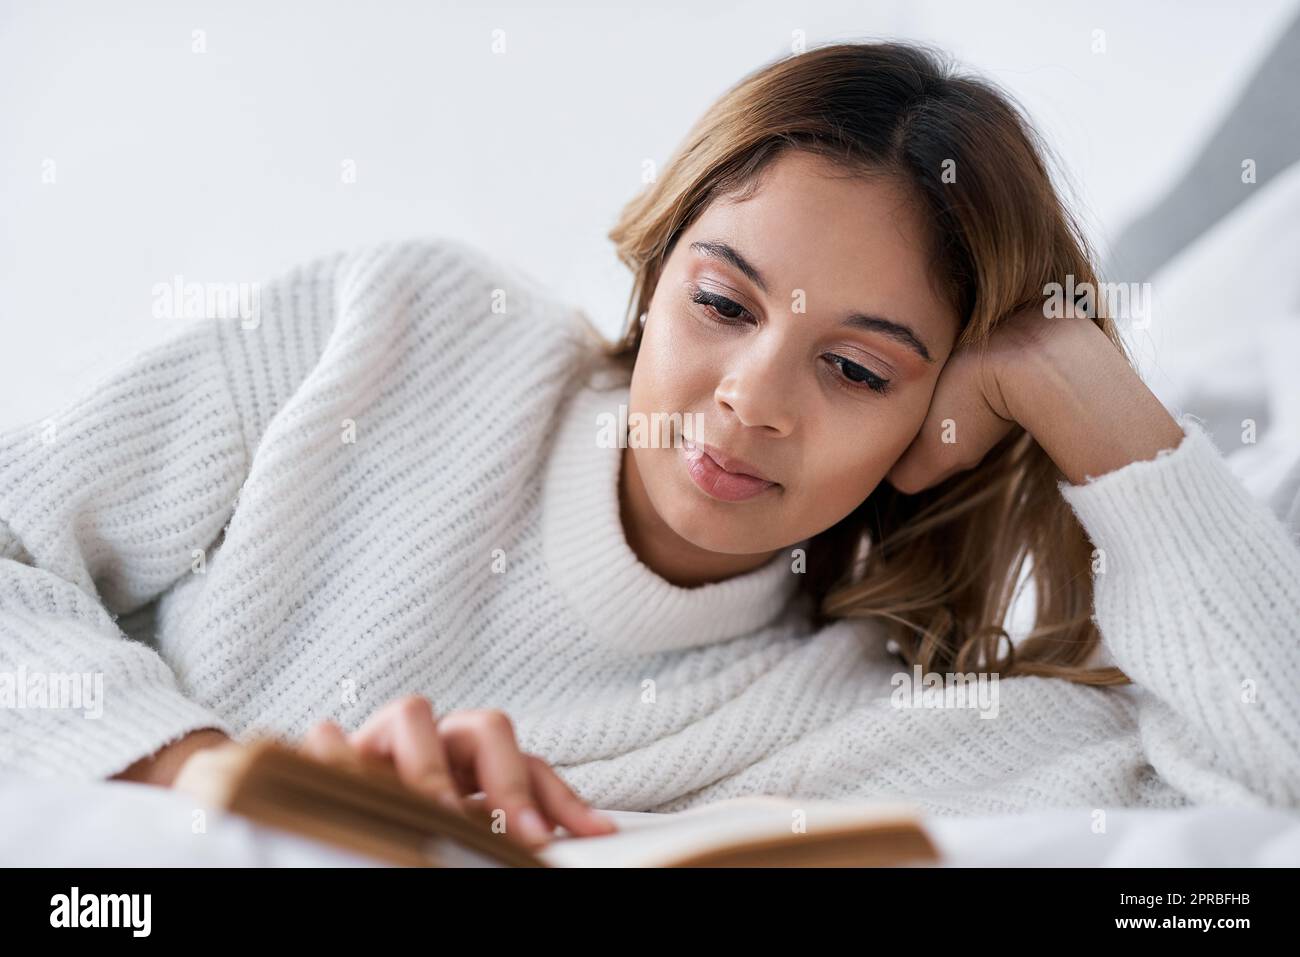 Quando avete un po' di tempo libero, leggete: Una giovane donna che legge un libro mentre si trova sul suo letto. Foto Stock